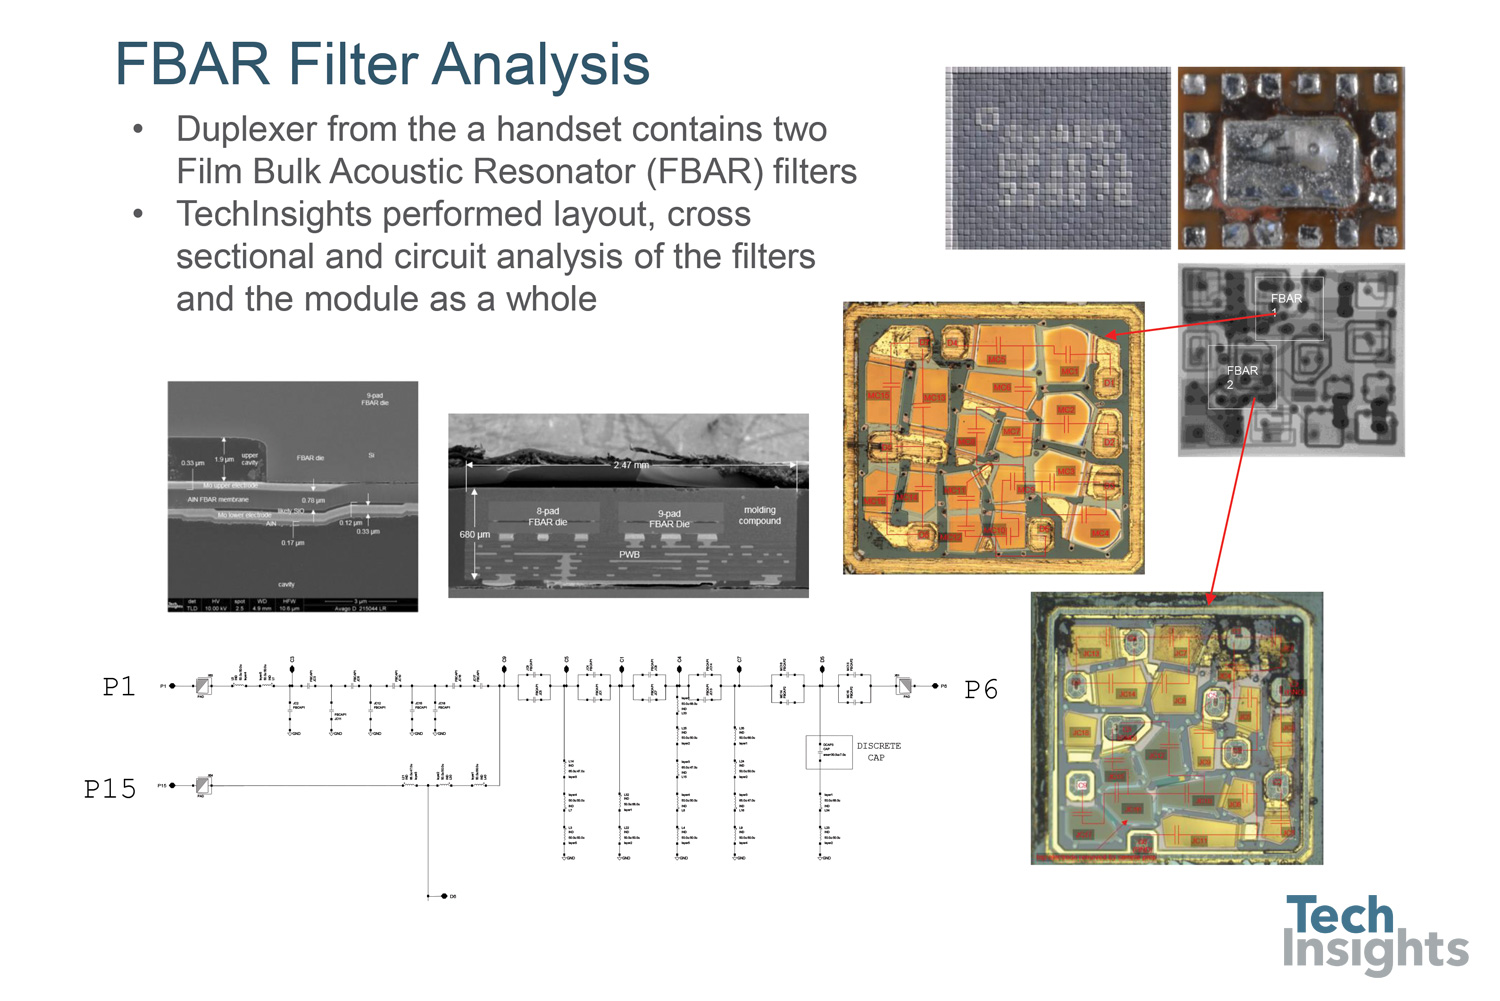 薄膜体声谐振器滤波器的分析。这是一个过程和电路分析的FBAR滤波器从一个双工器从一个移动电话。对产生毫米波的新滤波技术的需求将引起人们对这类分析的更大兴趣。